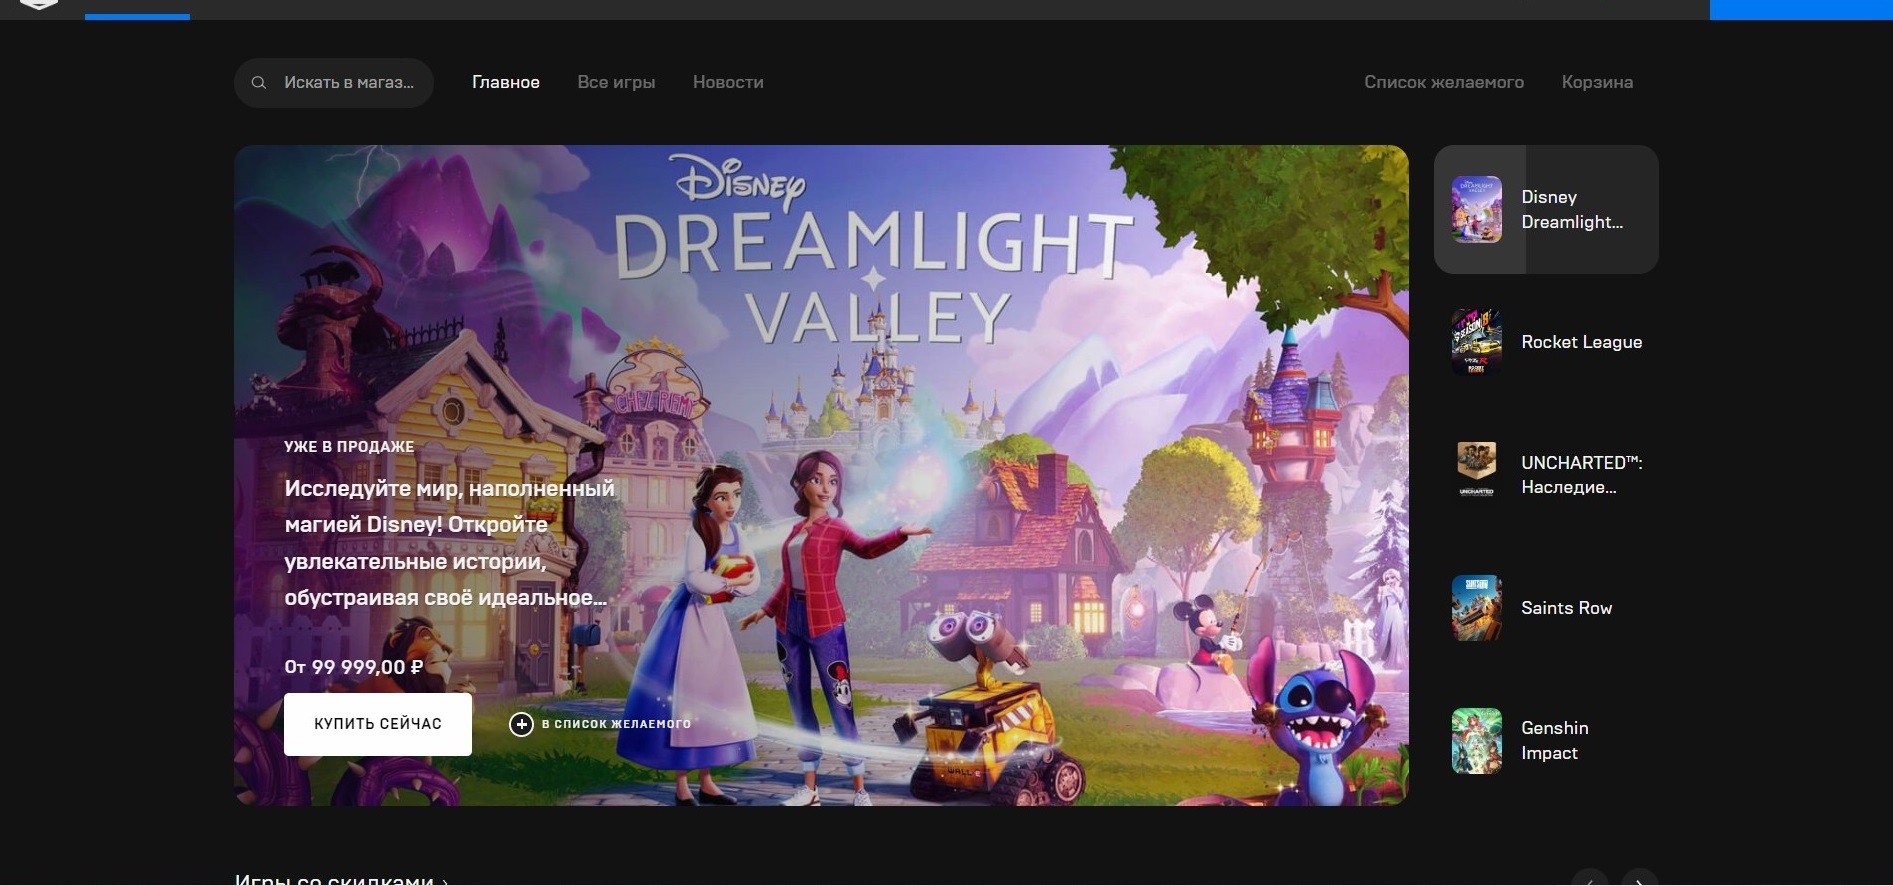 Disney dreamlight valley crystal dream. Disney Dreamlight Valley русификатор. Disney Dreamlight Valley читы на предметы. Disney Dreamlight Valley полная карта. Disney Dreamlight Valley сохранения 100.